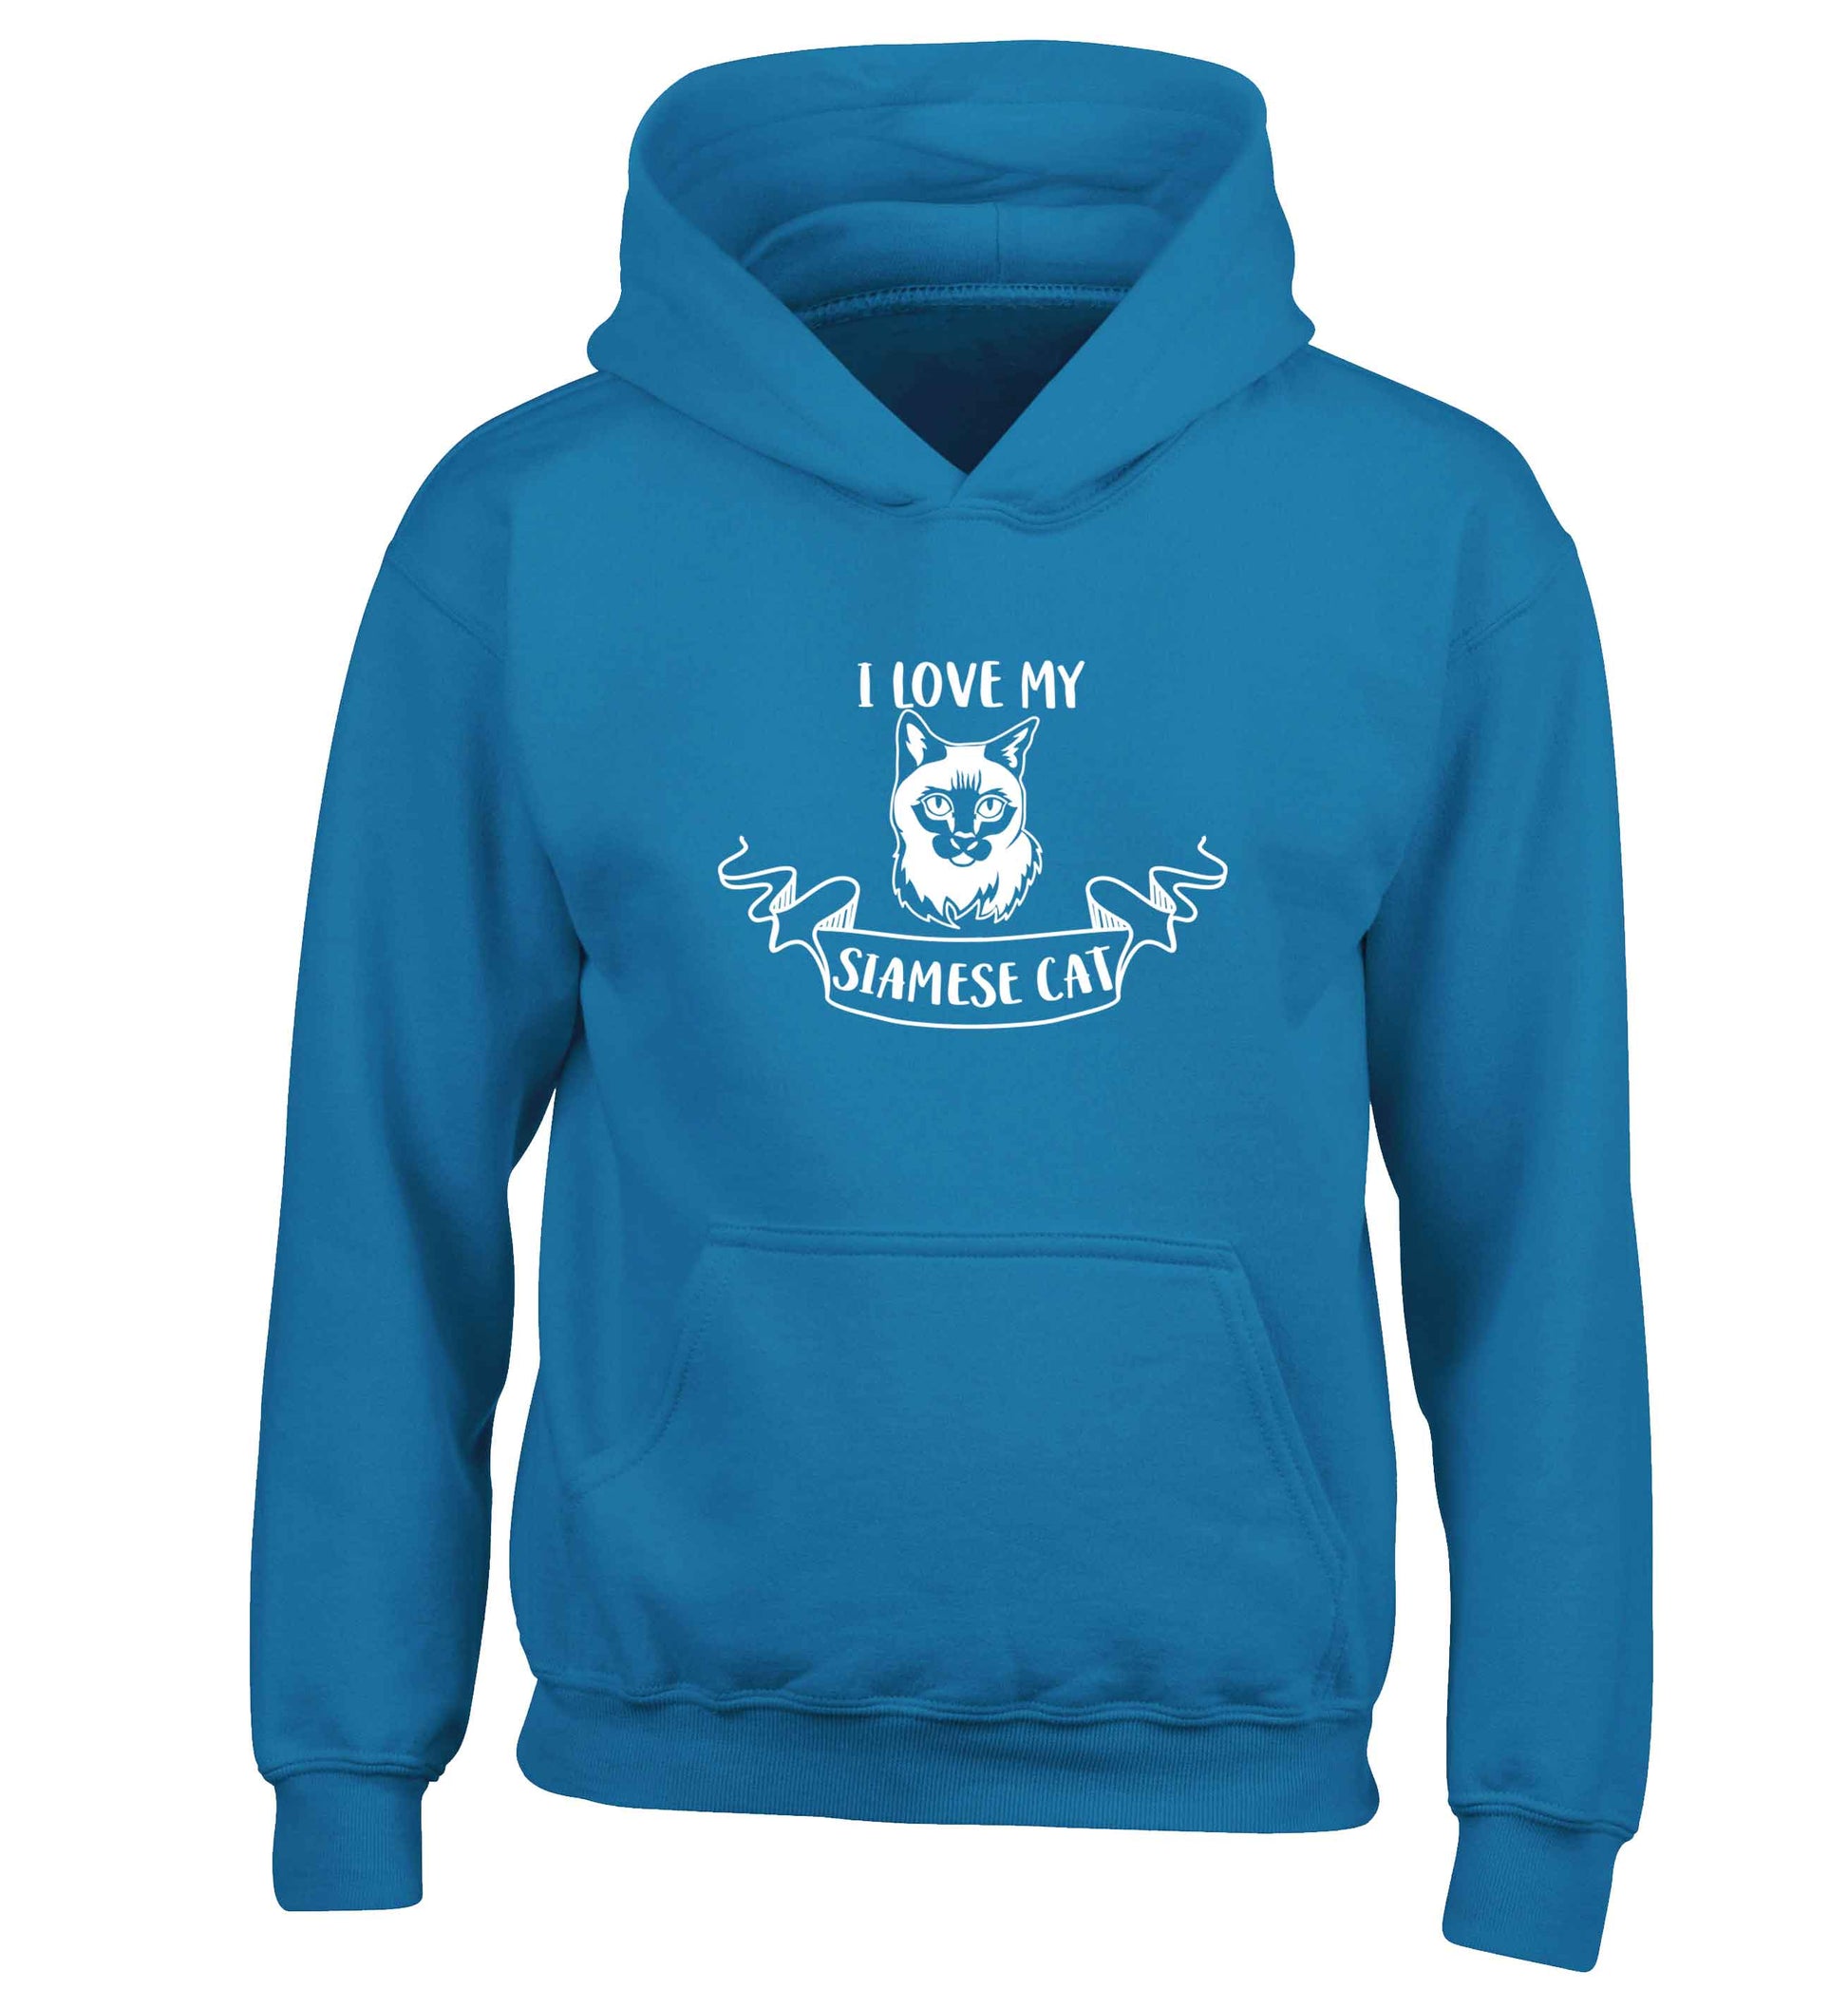 I love my siamese cat children's blue hoodie 12-13 Years